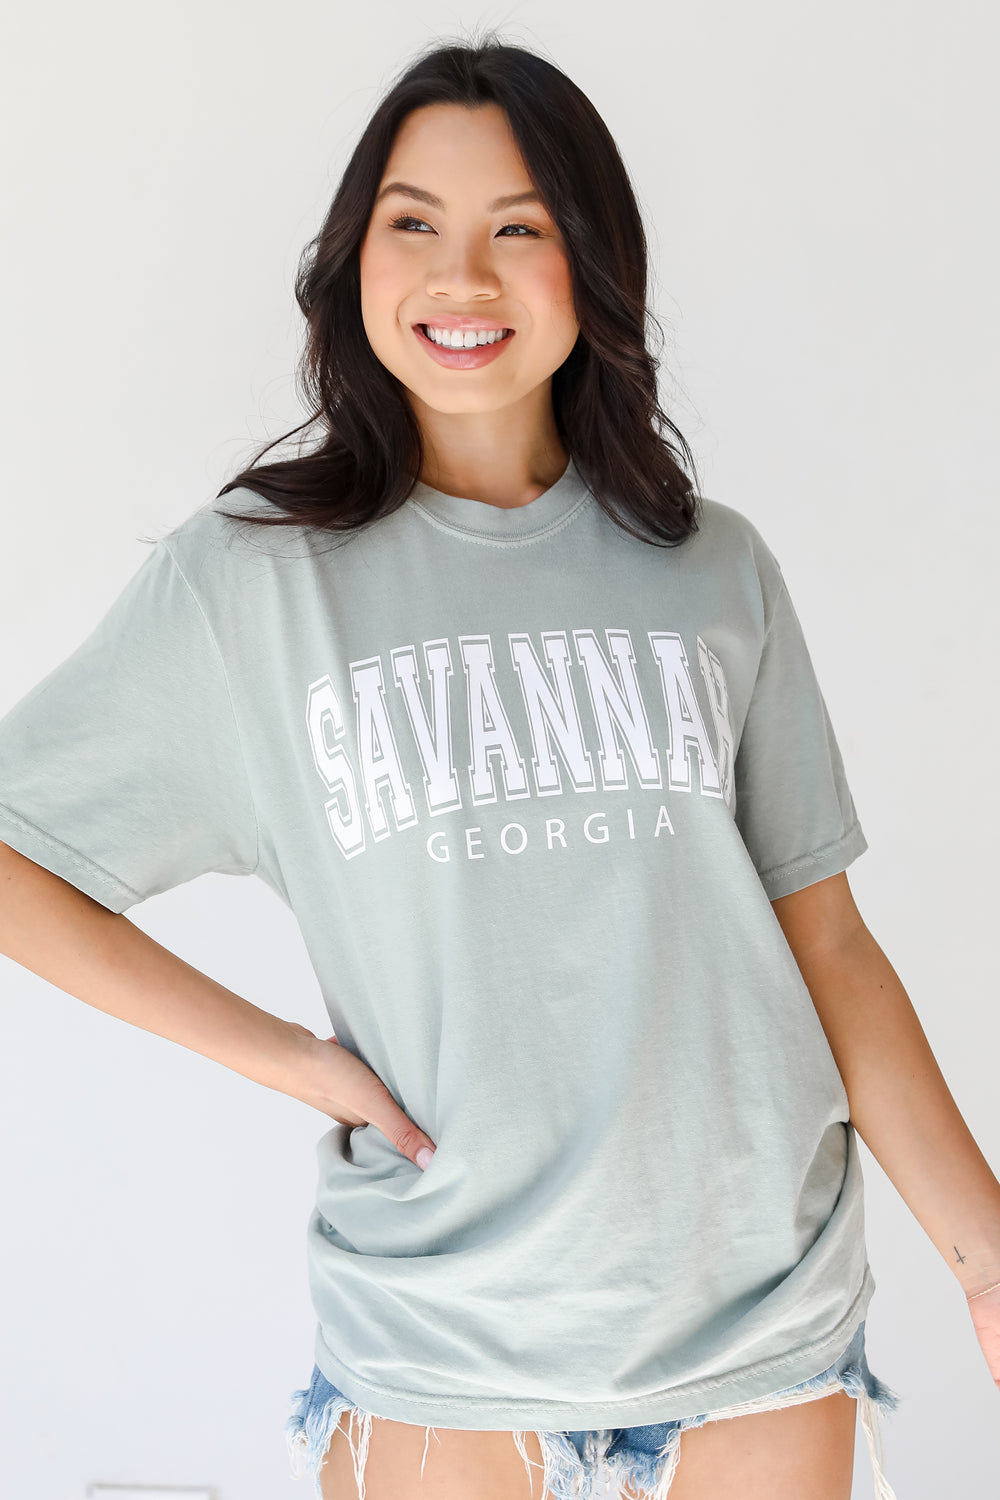 Sage Savannah Georgia Tee on model